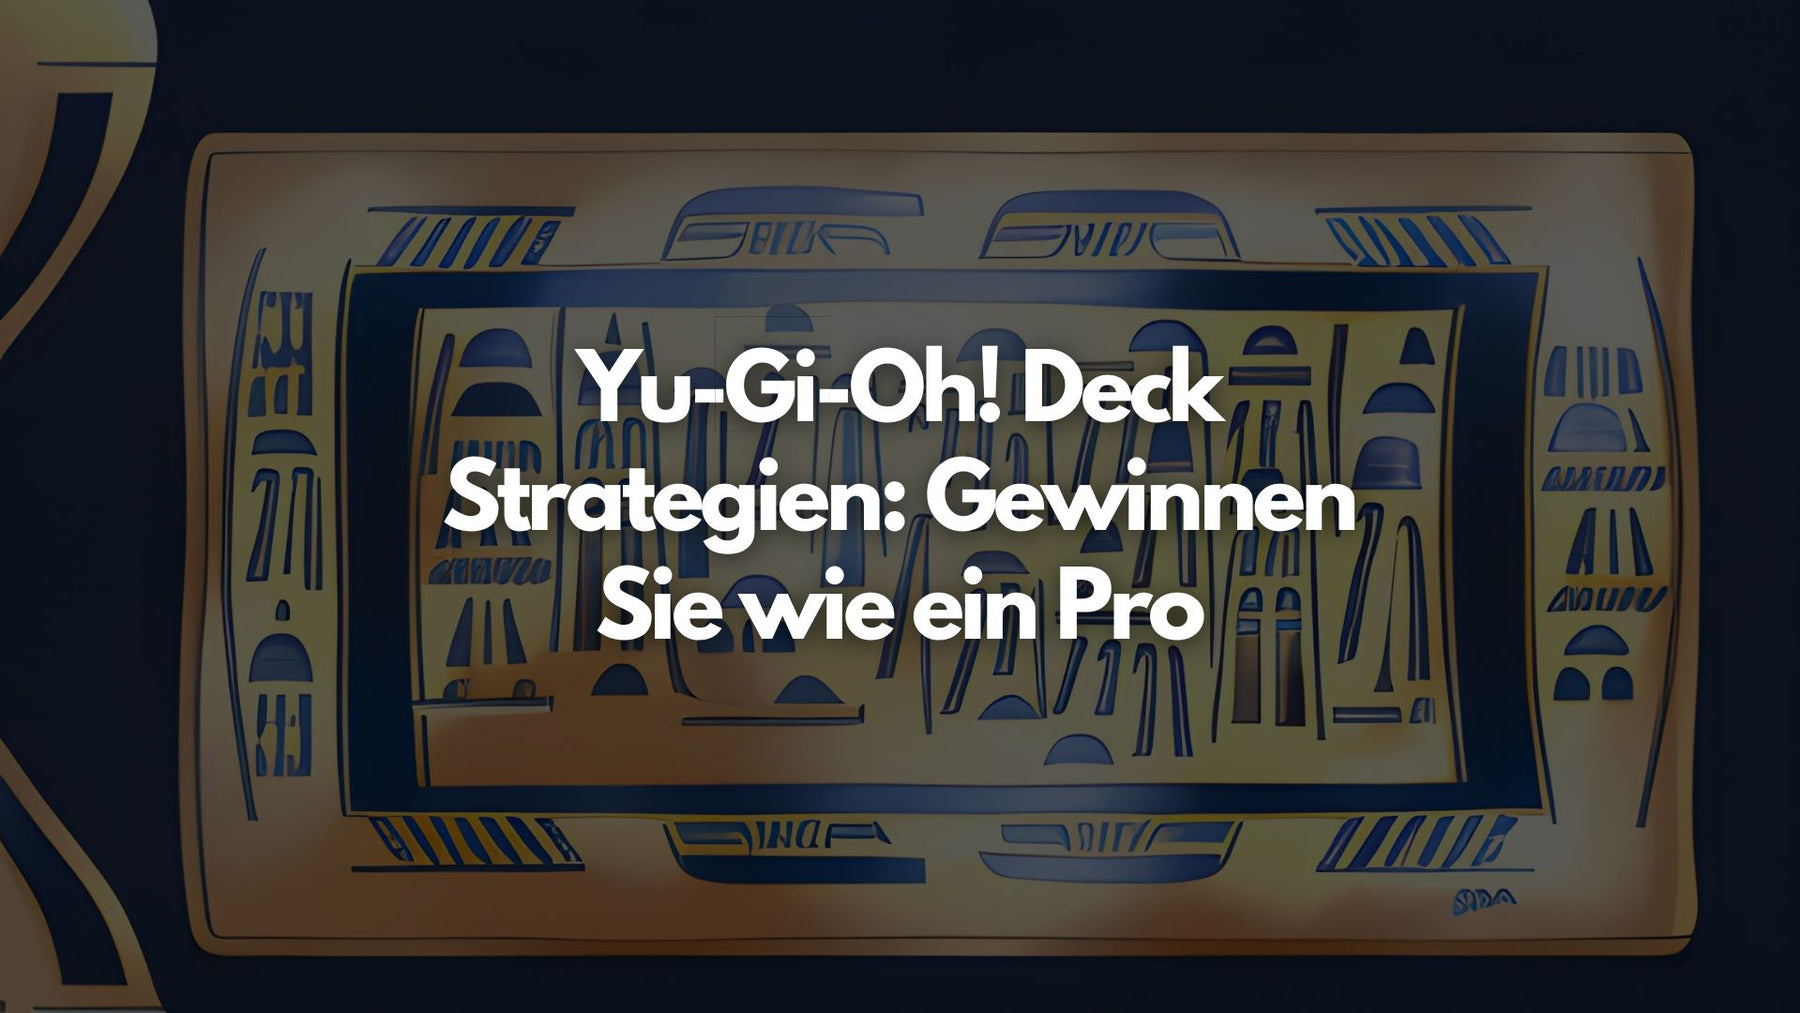 Yu-Gi-Oh! Deck Strategien: Gewinnen Sie wie ein Pro